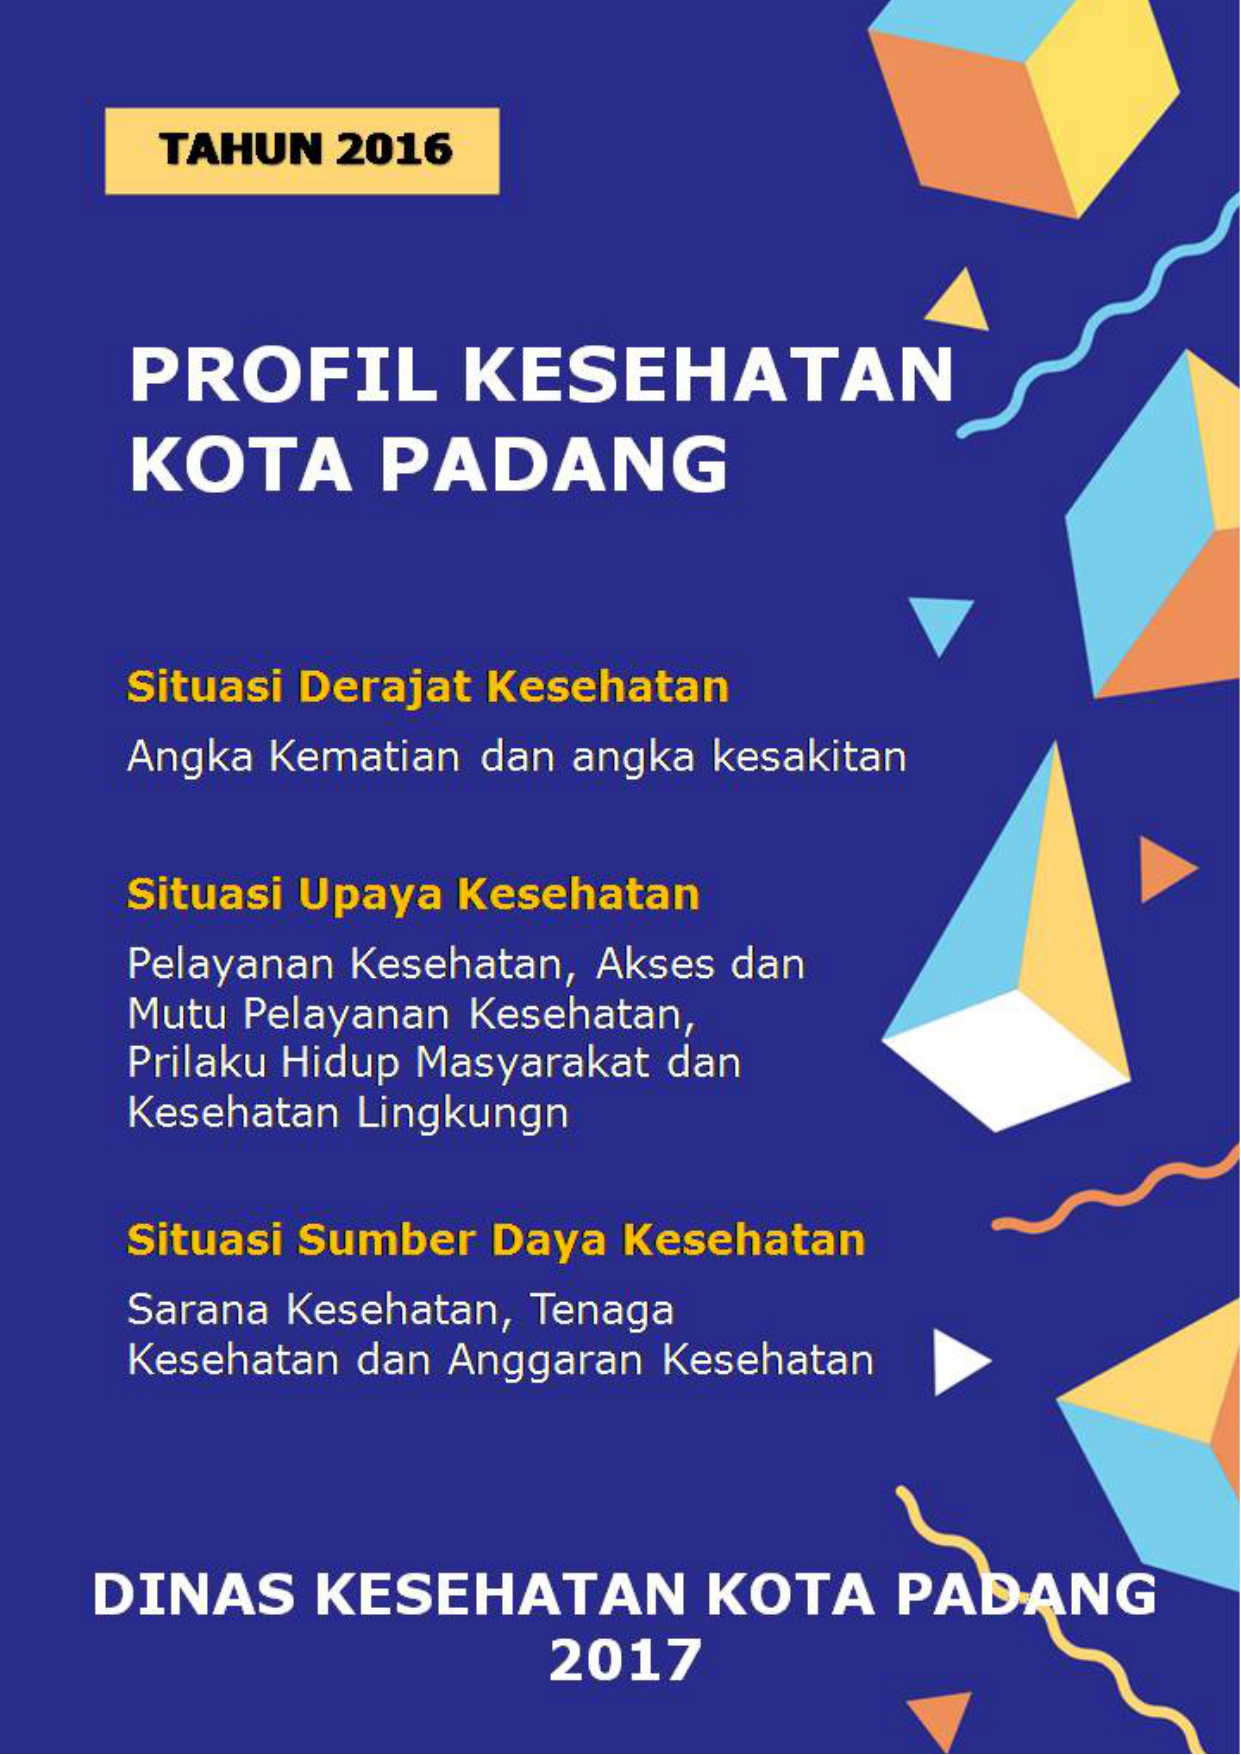 Profil Kesehatan Kota Padang Tahun 2016 KATA PENGANTAR Puji dan syukur kita ucapkan kehadirat Allah SWT karena telah selesainya penyusunan Profil Kesehatan